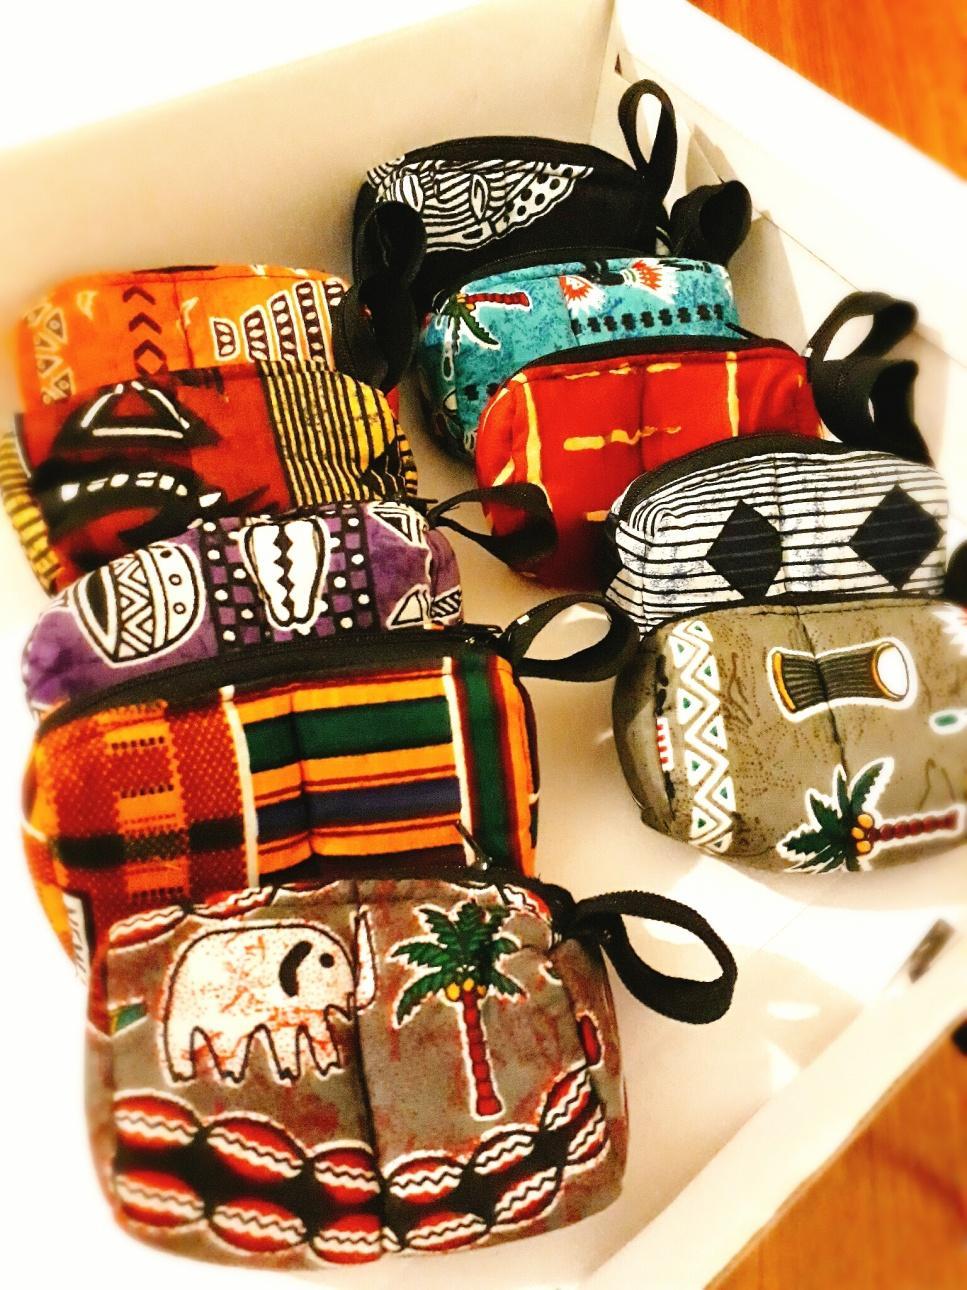 As bolsas africanas 1 2 6 7 8 De cabo Verde mas da aldeira da Calheta na Ilha do Maio chegam as bolsas feitas em